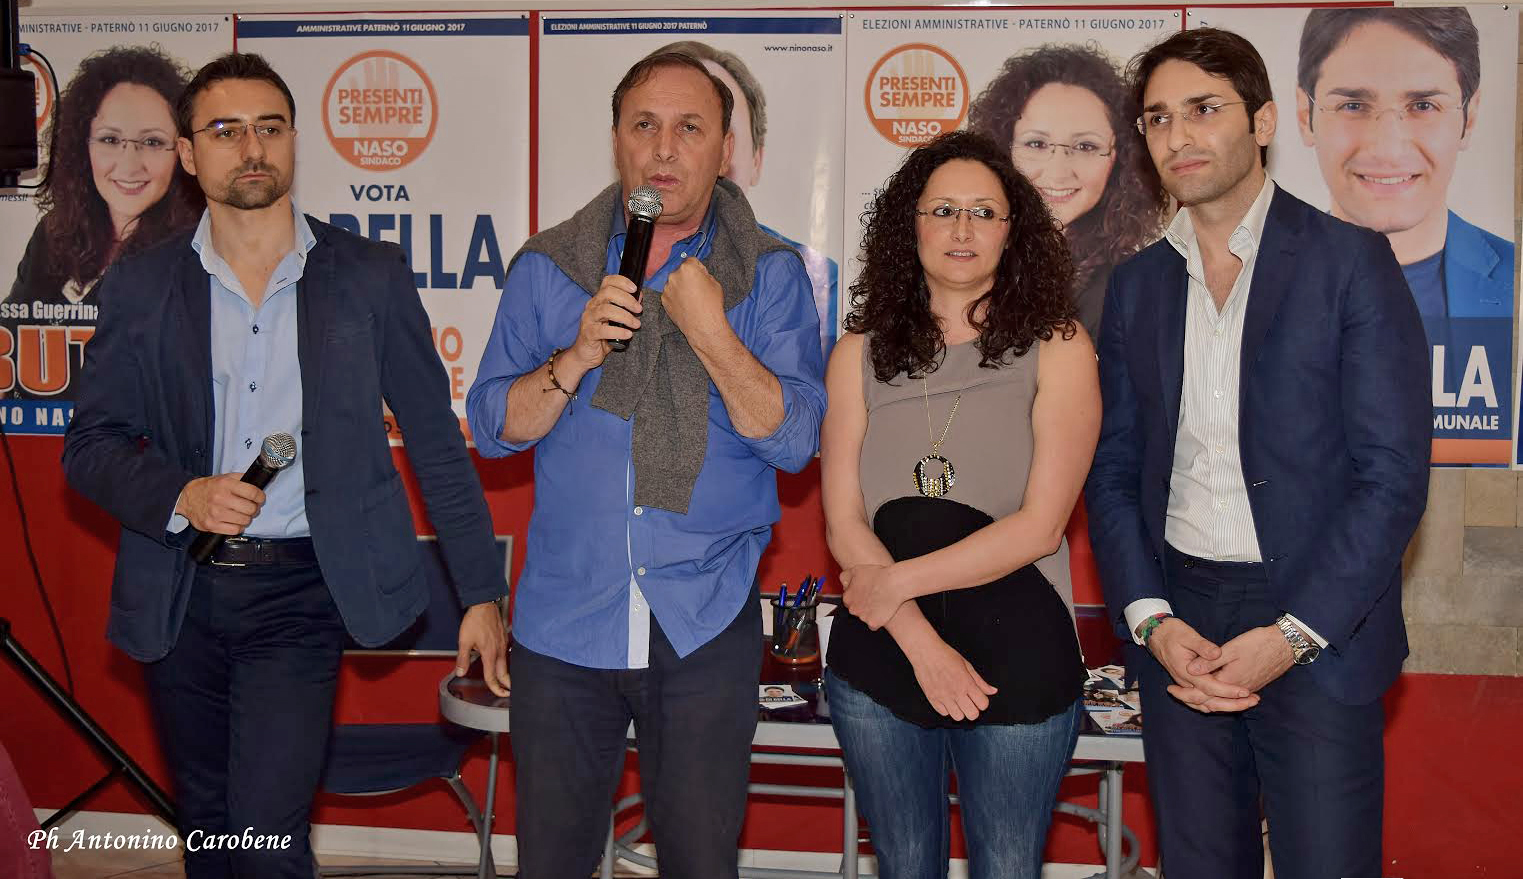 Da sinistra: avv. Andrea Carmanello, il candidato sindaco Nino Naso e i due candidati al Consiglio Comunale Guerrina Buttò e Andrea Di Bella.